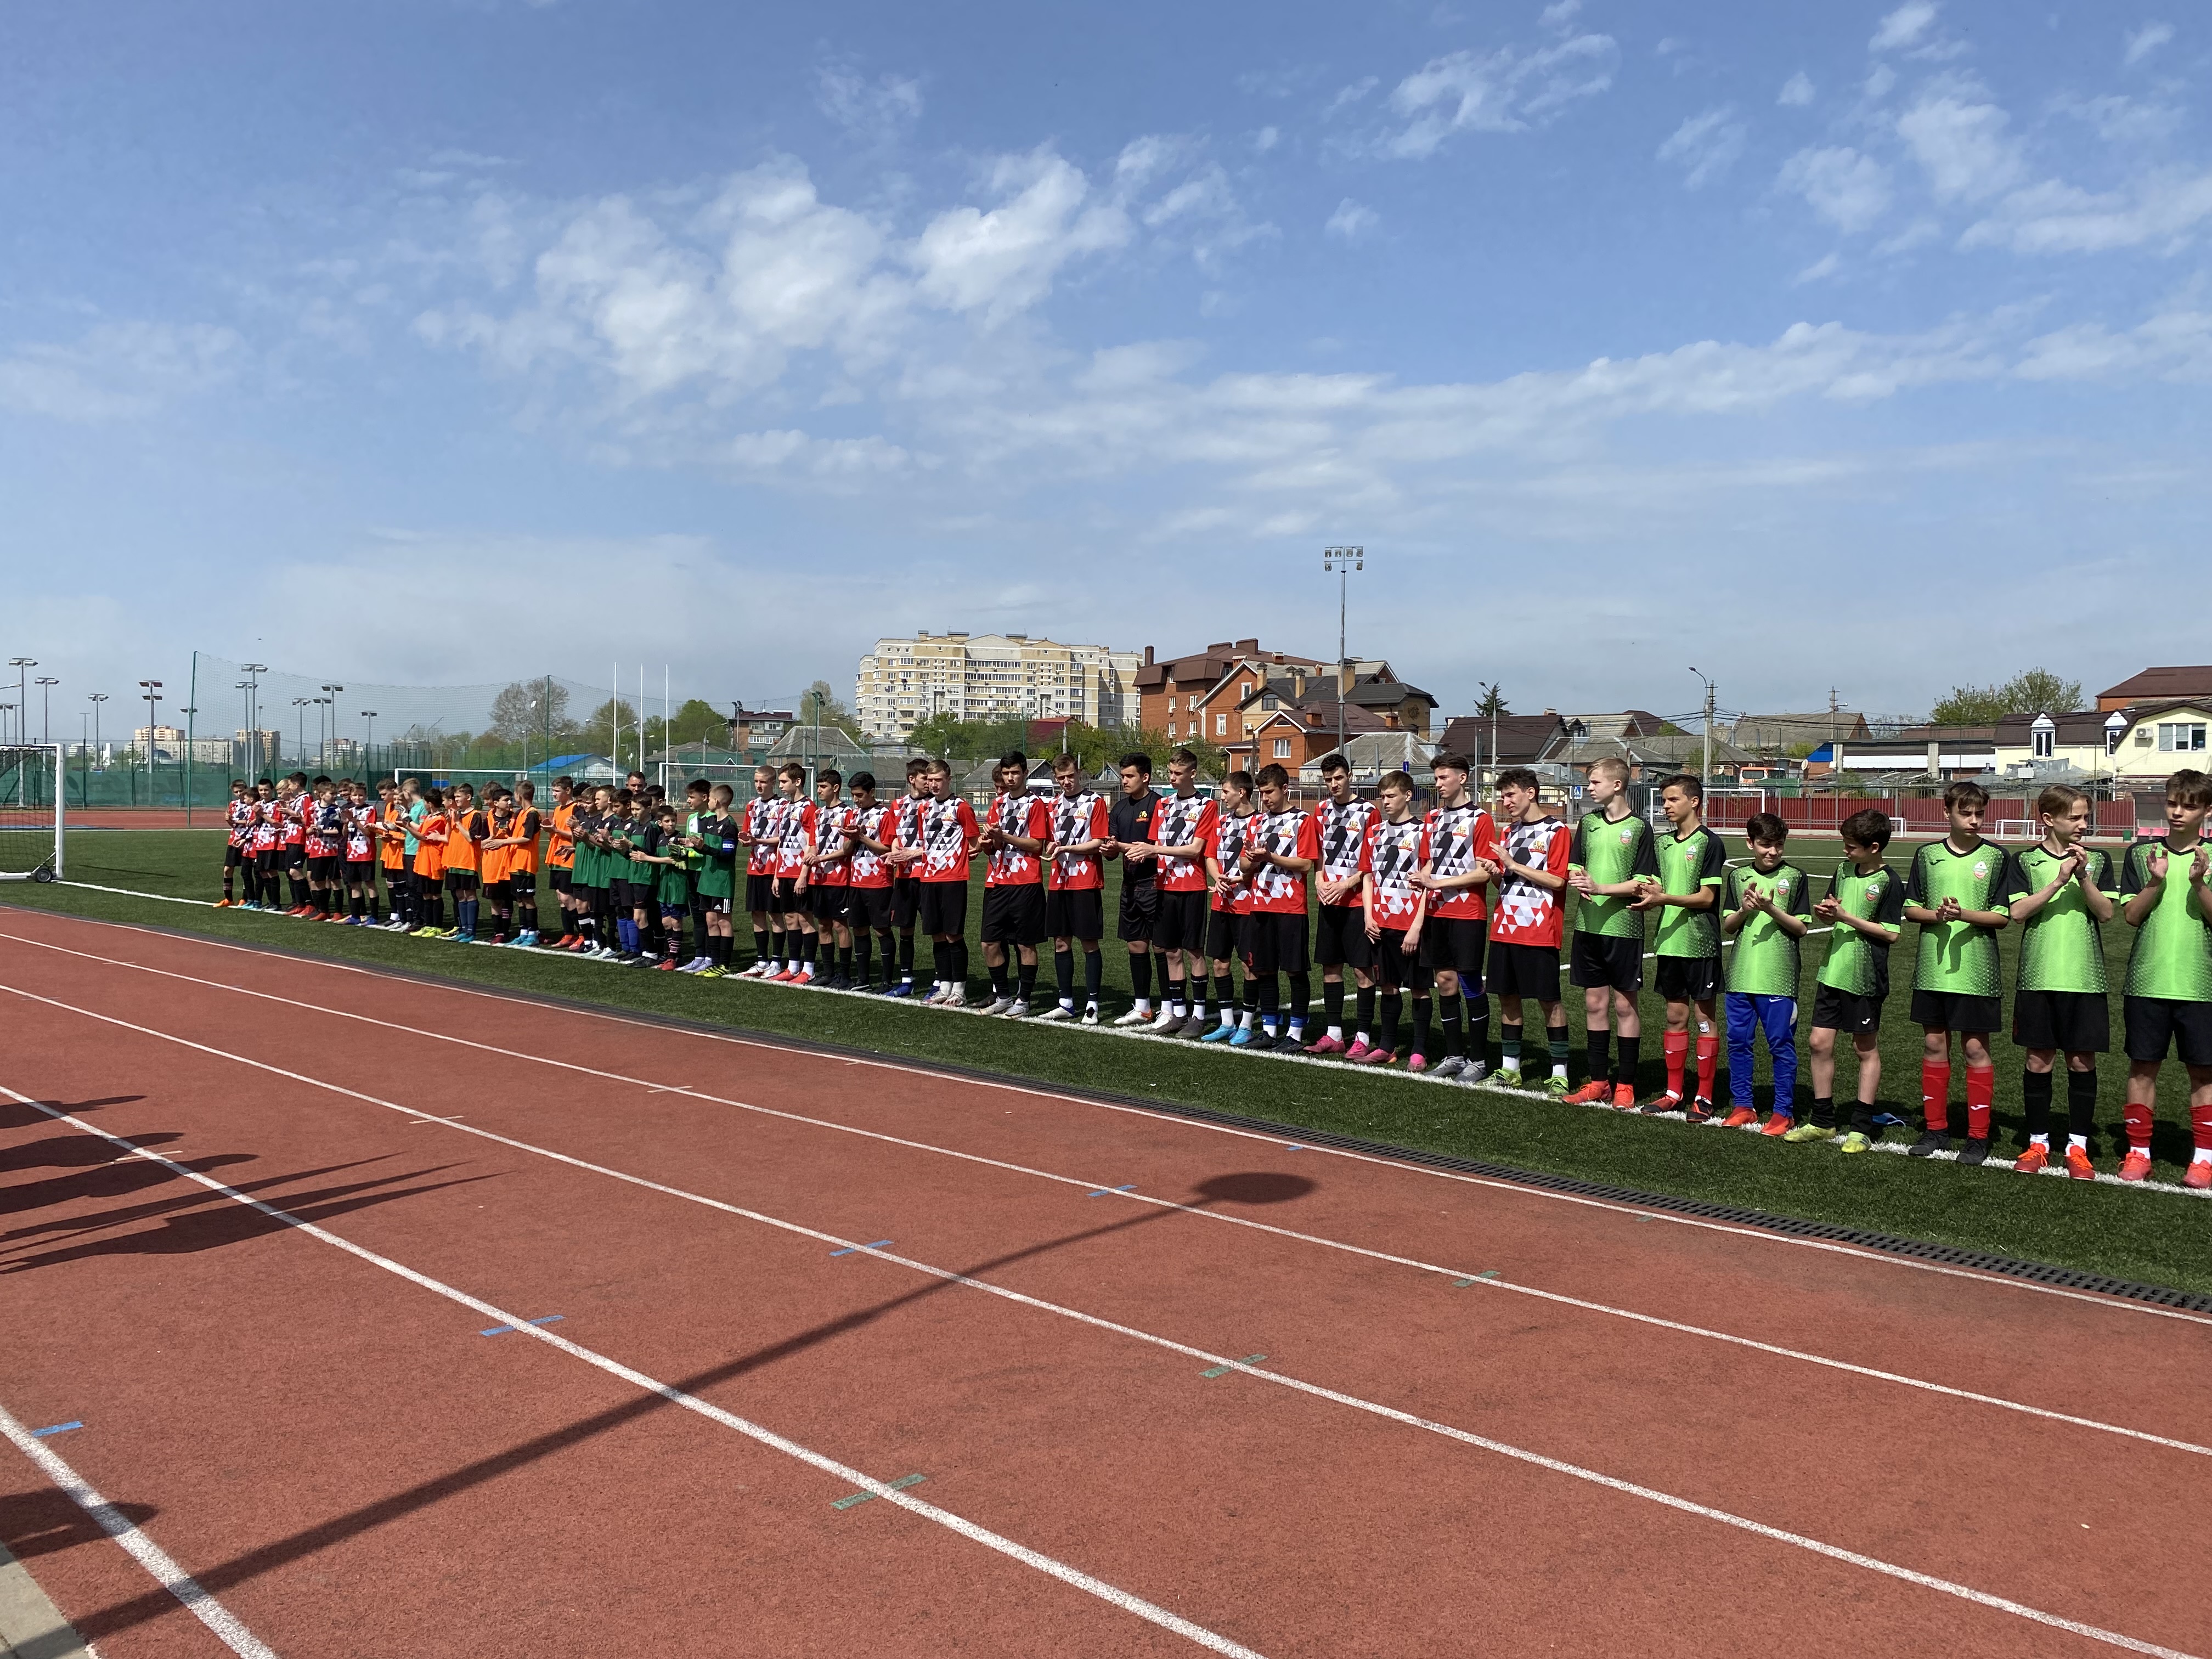 Сегодня, 24 апреля 2022г. состоялось открытие первенства МО г.Краснодар по футболу среди юношей до 15 лет